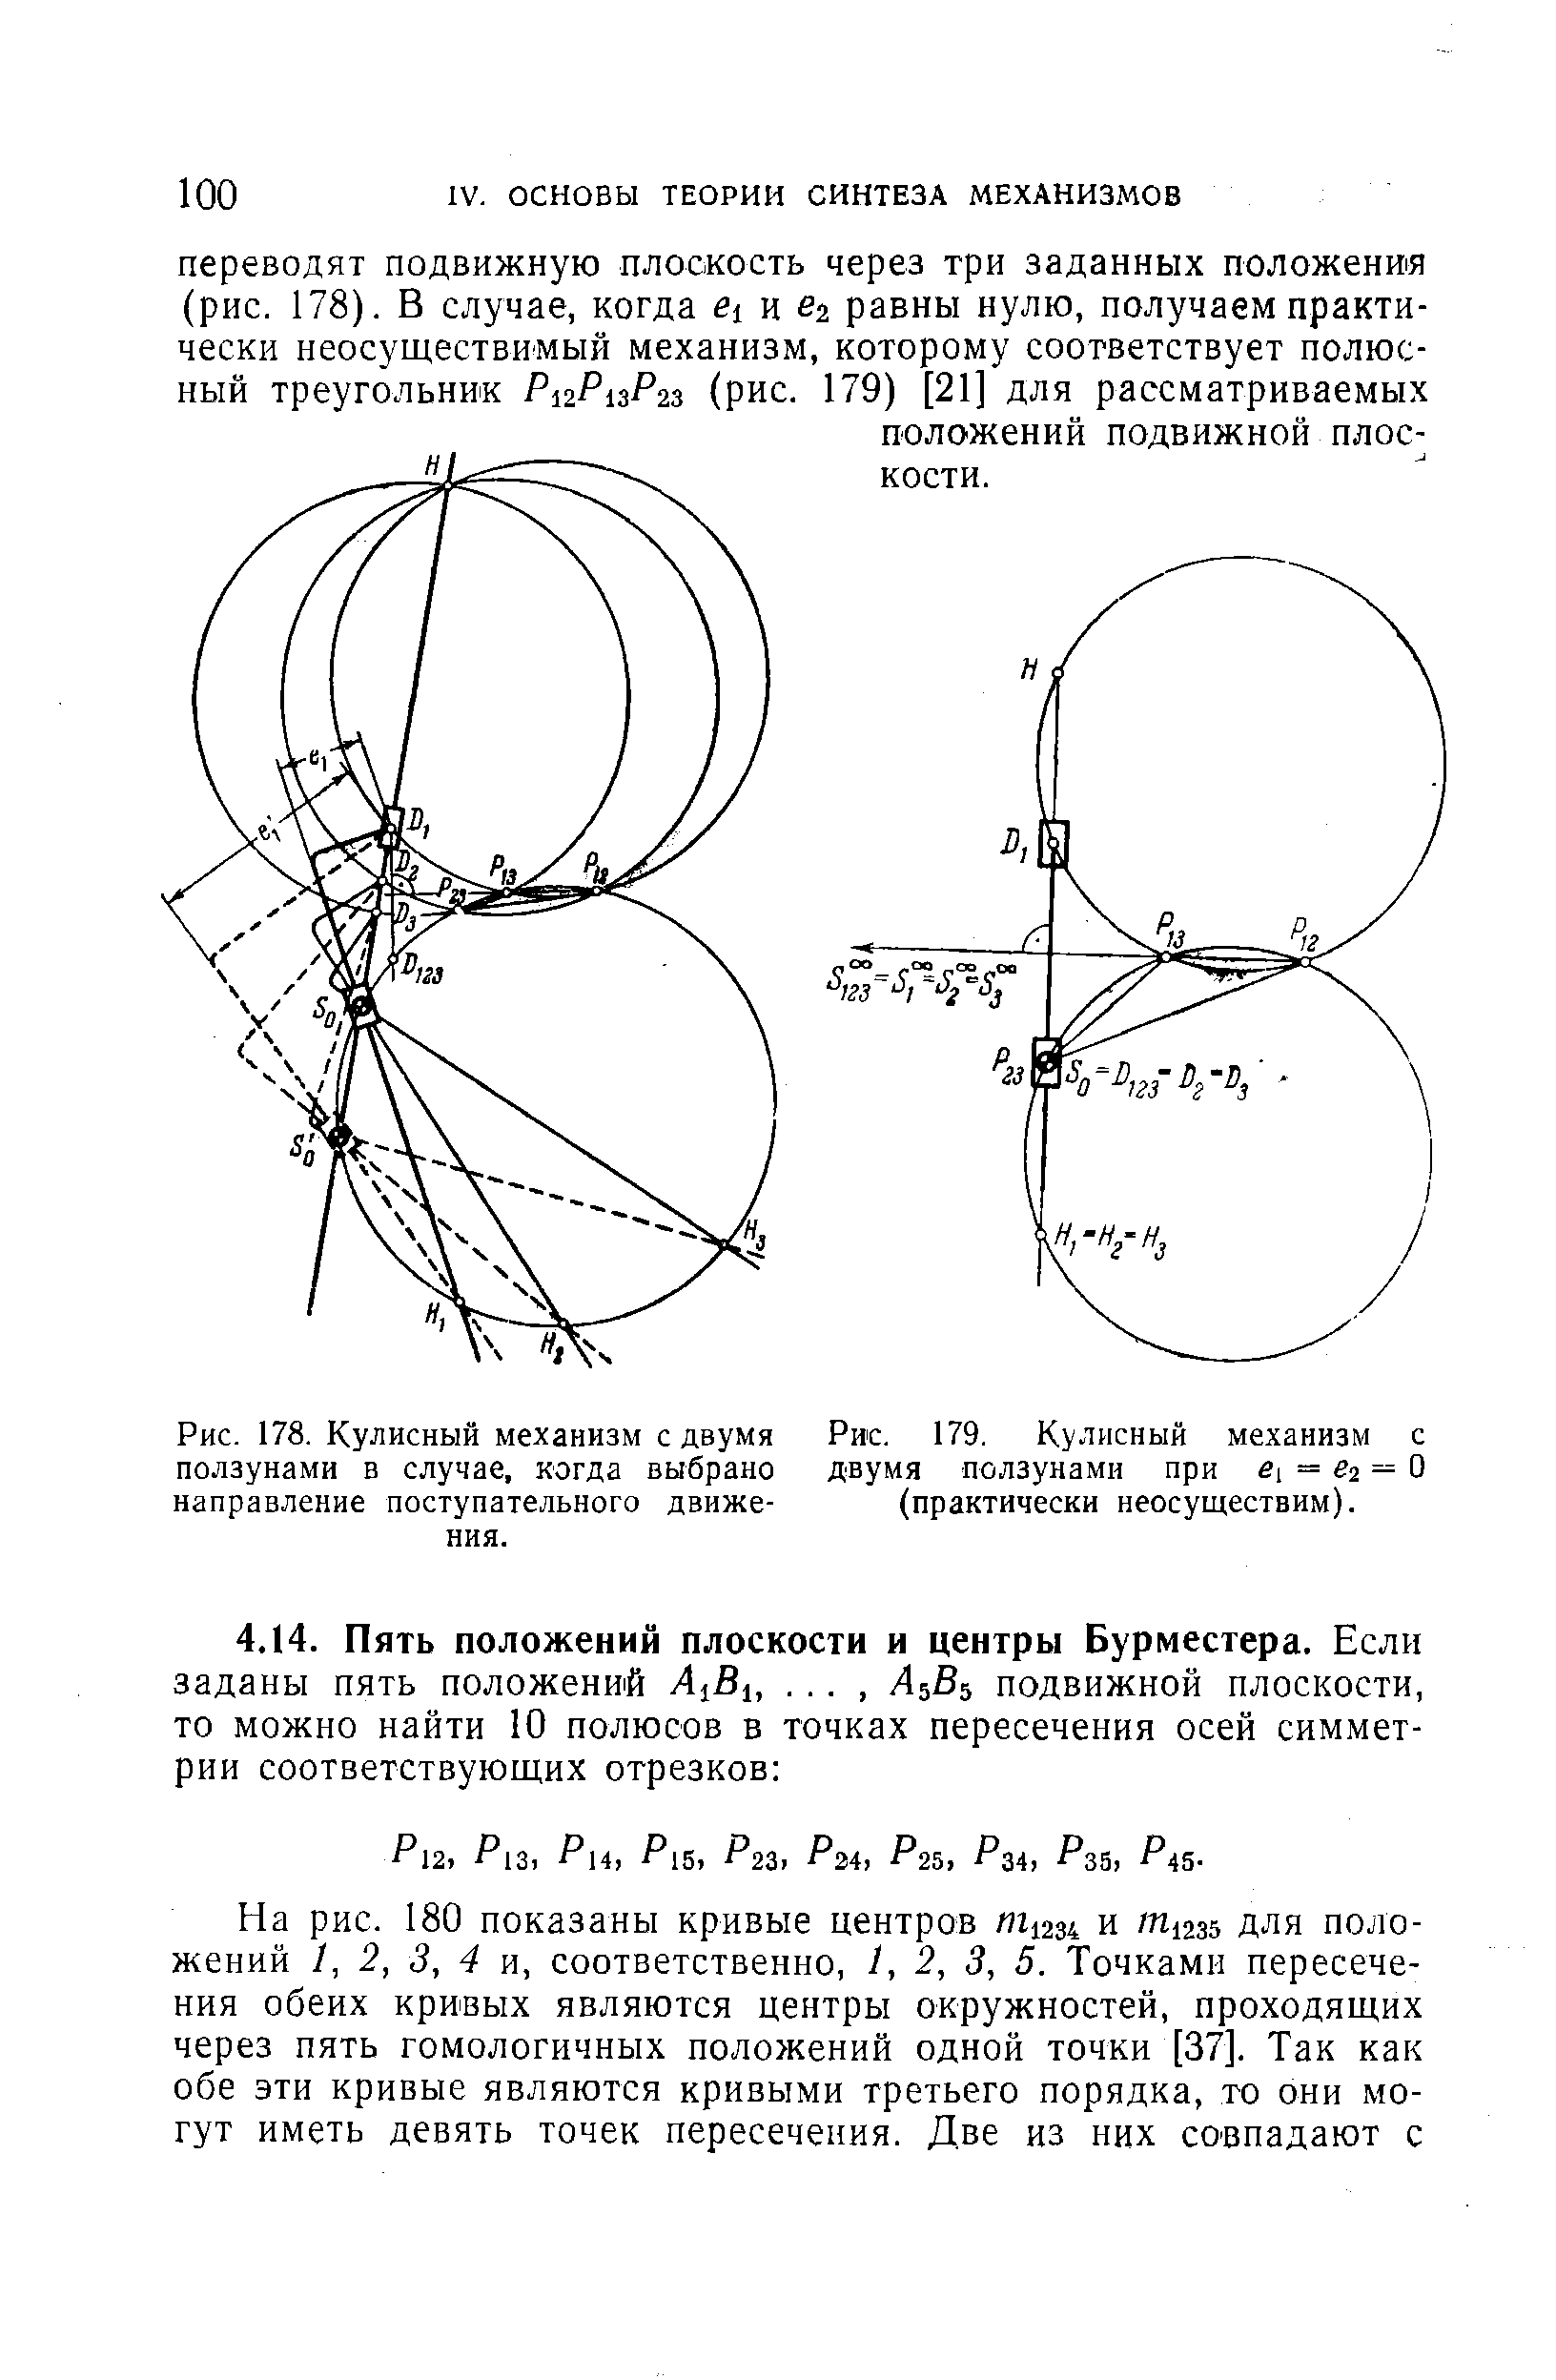 Рис. 179. <a href="/info/1928">Кулисный механизм</a> с двумя ползунами при Si = Й2 = О (практически неосуществим).
